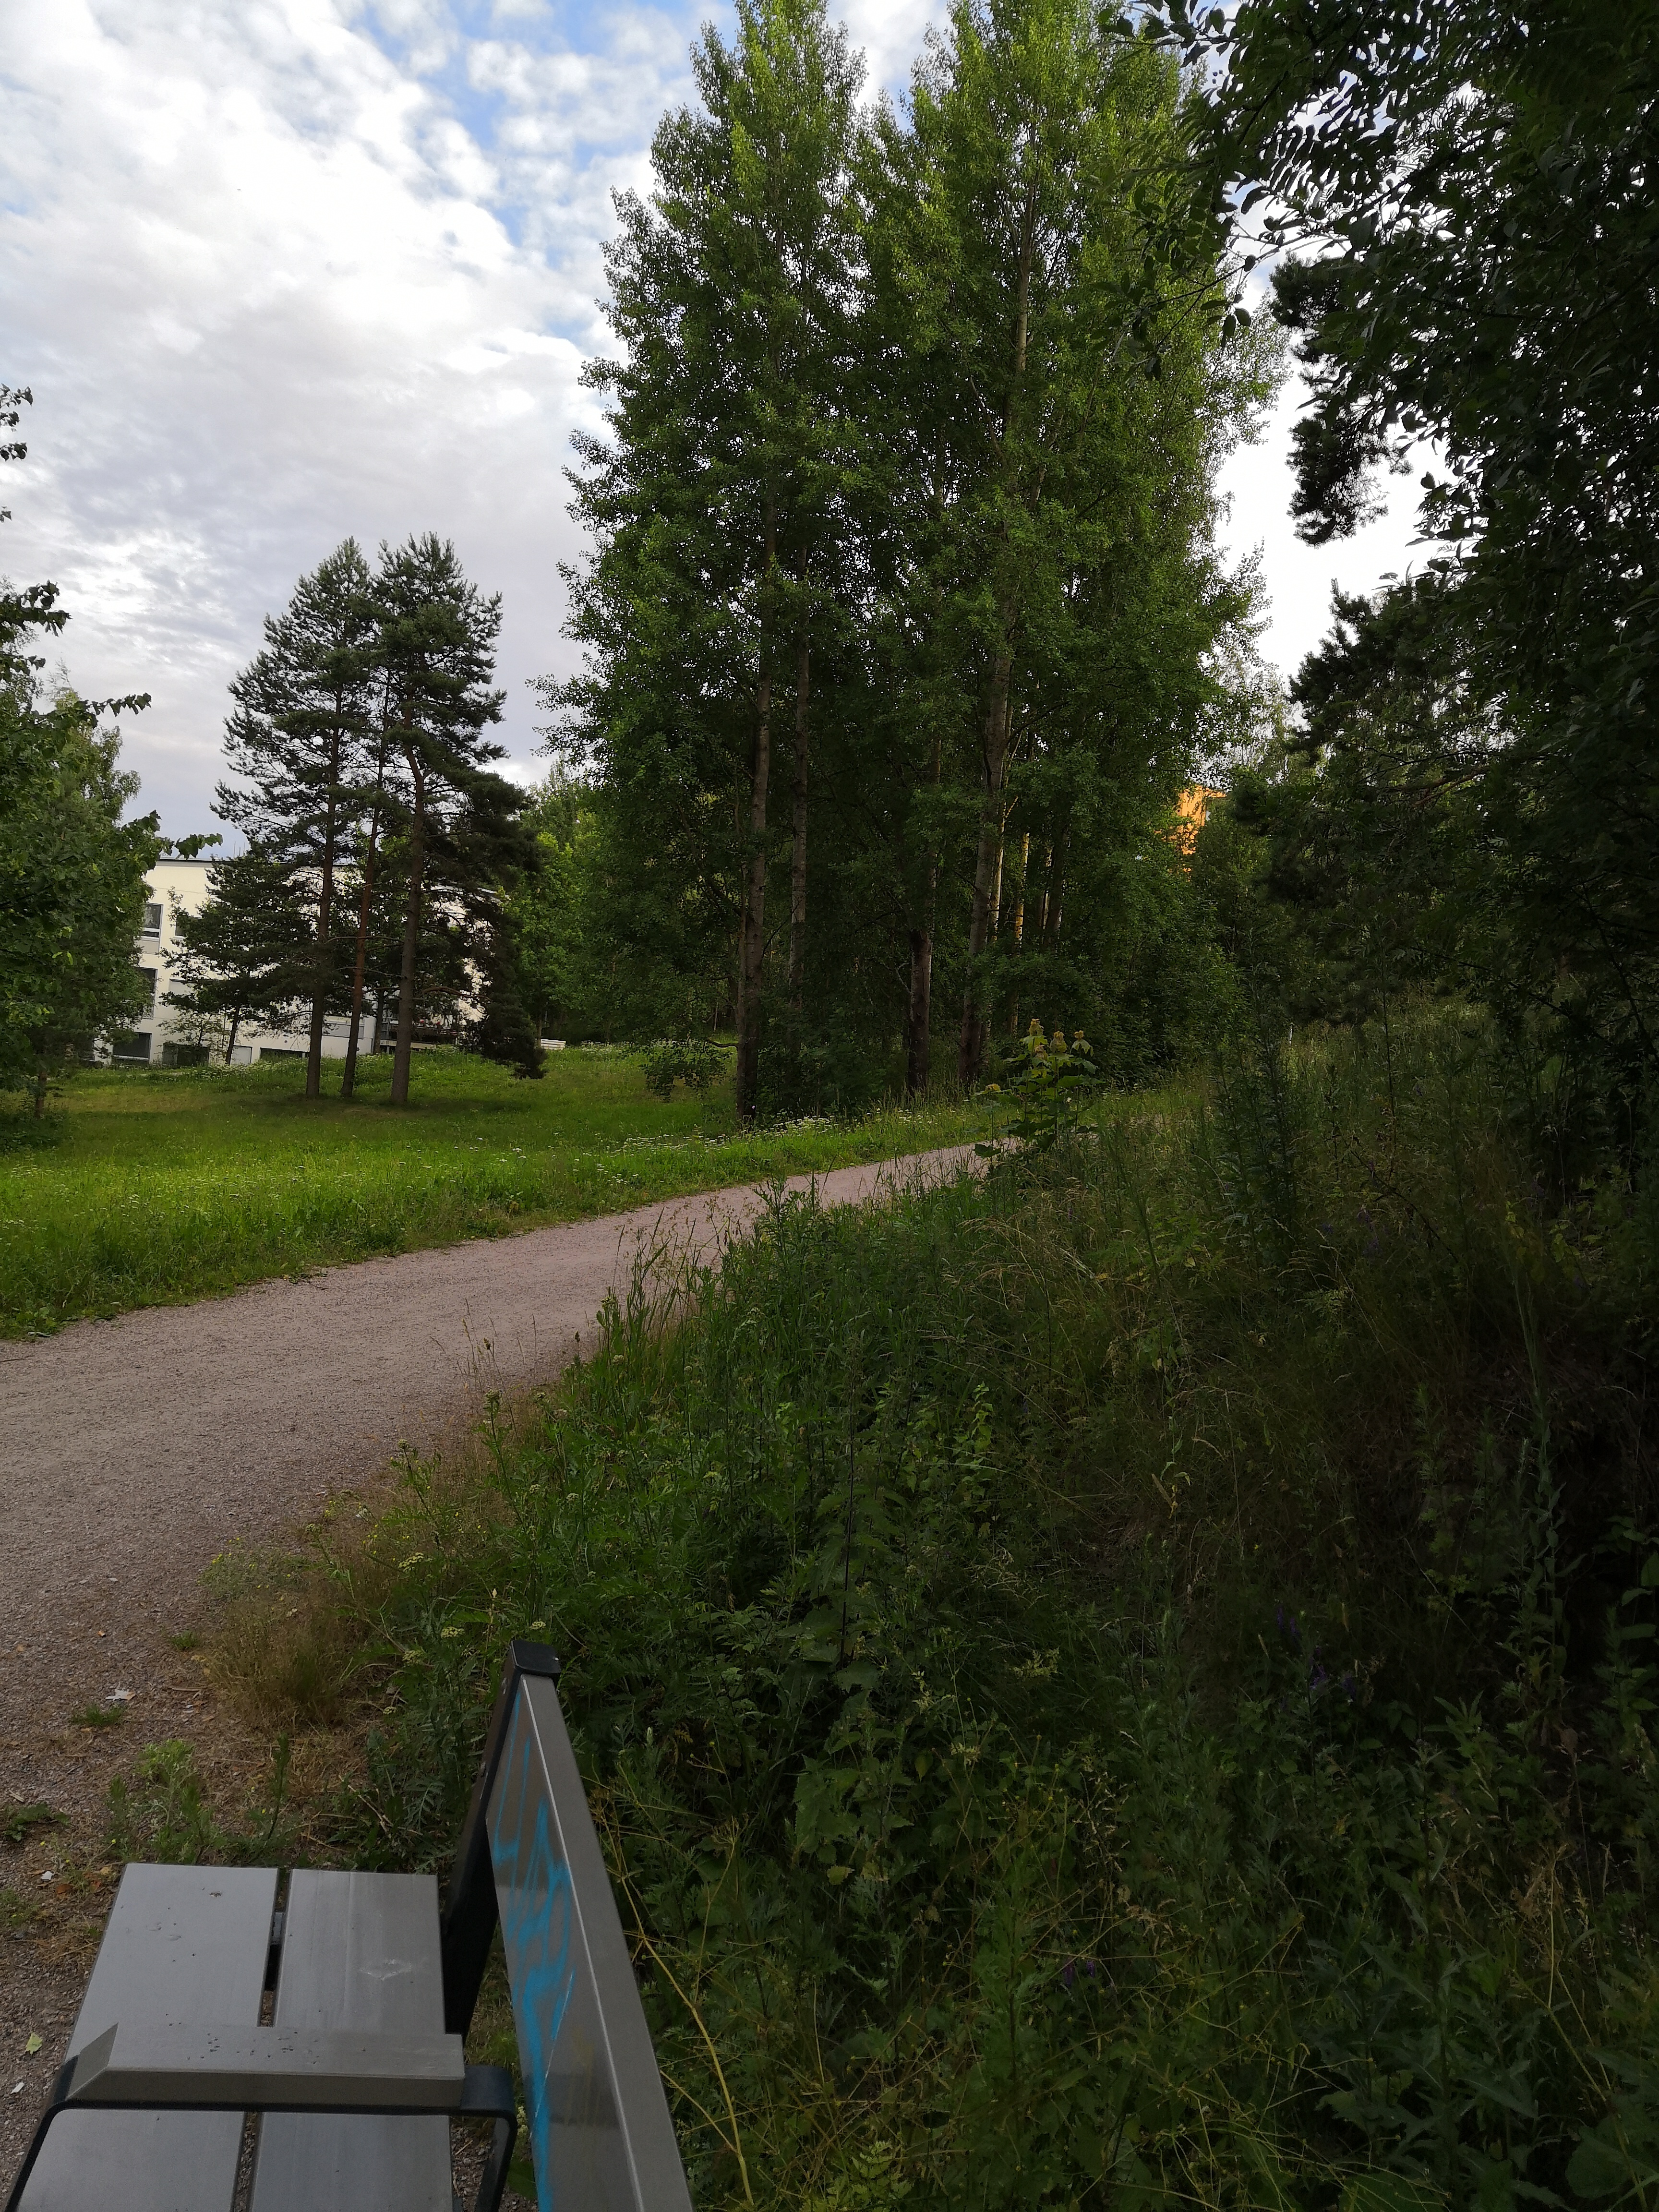 Paukkulanpuistossa sijaitsevat rakenteet, kauempana näkyy Kivikon asuinaluetta. Puiston alueella on sijainnut puolustusvoimien rakentama Malmin ampumarata, joka valmistui vuonna 1937 Helsingissä järjestettyihin ammunnan MM-kisoihin, ja suljettiin vuonna 1993. rephoto